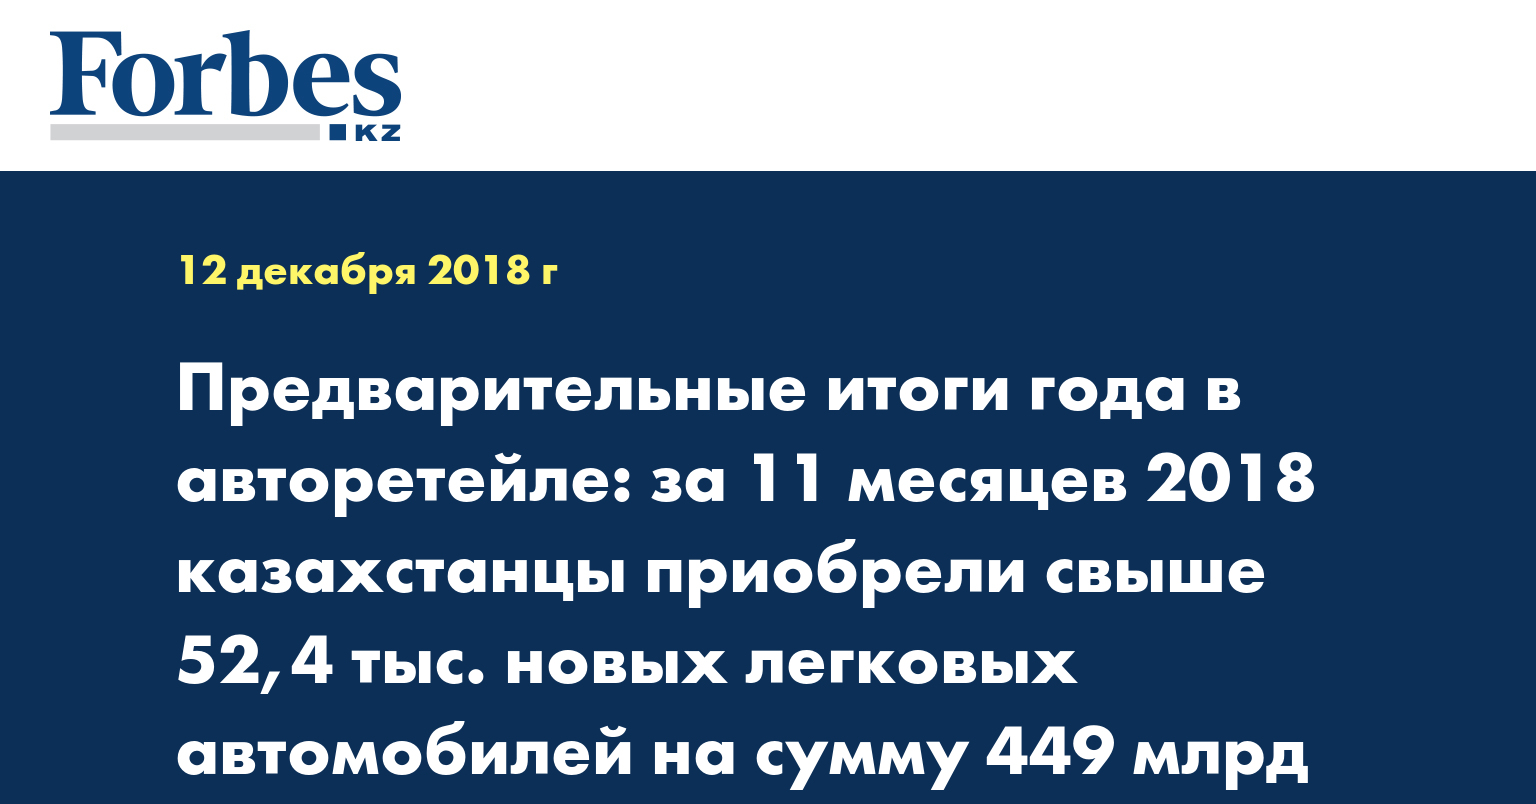 Предварительные итоги года в авторетейле: за 11 месяцев 2018 казахстанцы приобрели свыше 52,4 тыс. новых легковых автомобилей на сумму 449 млрд тенге 